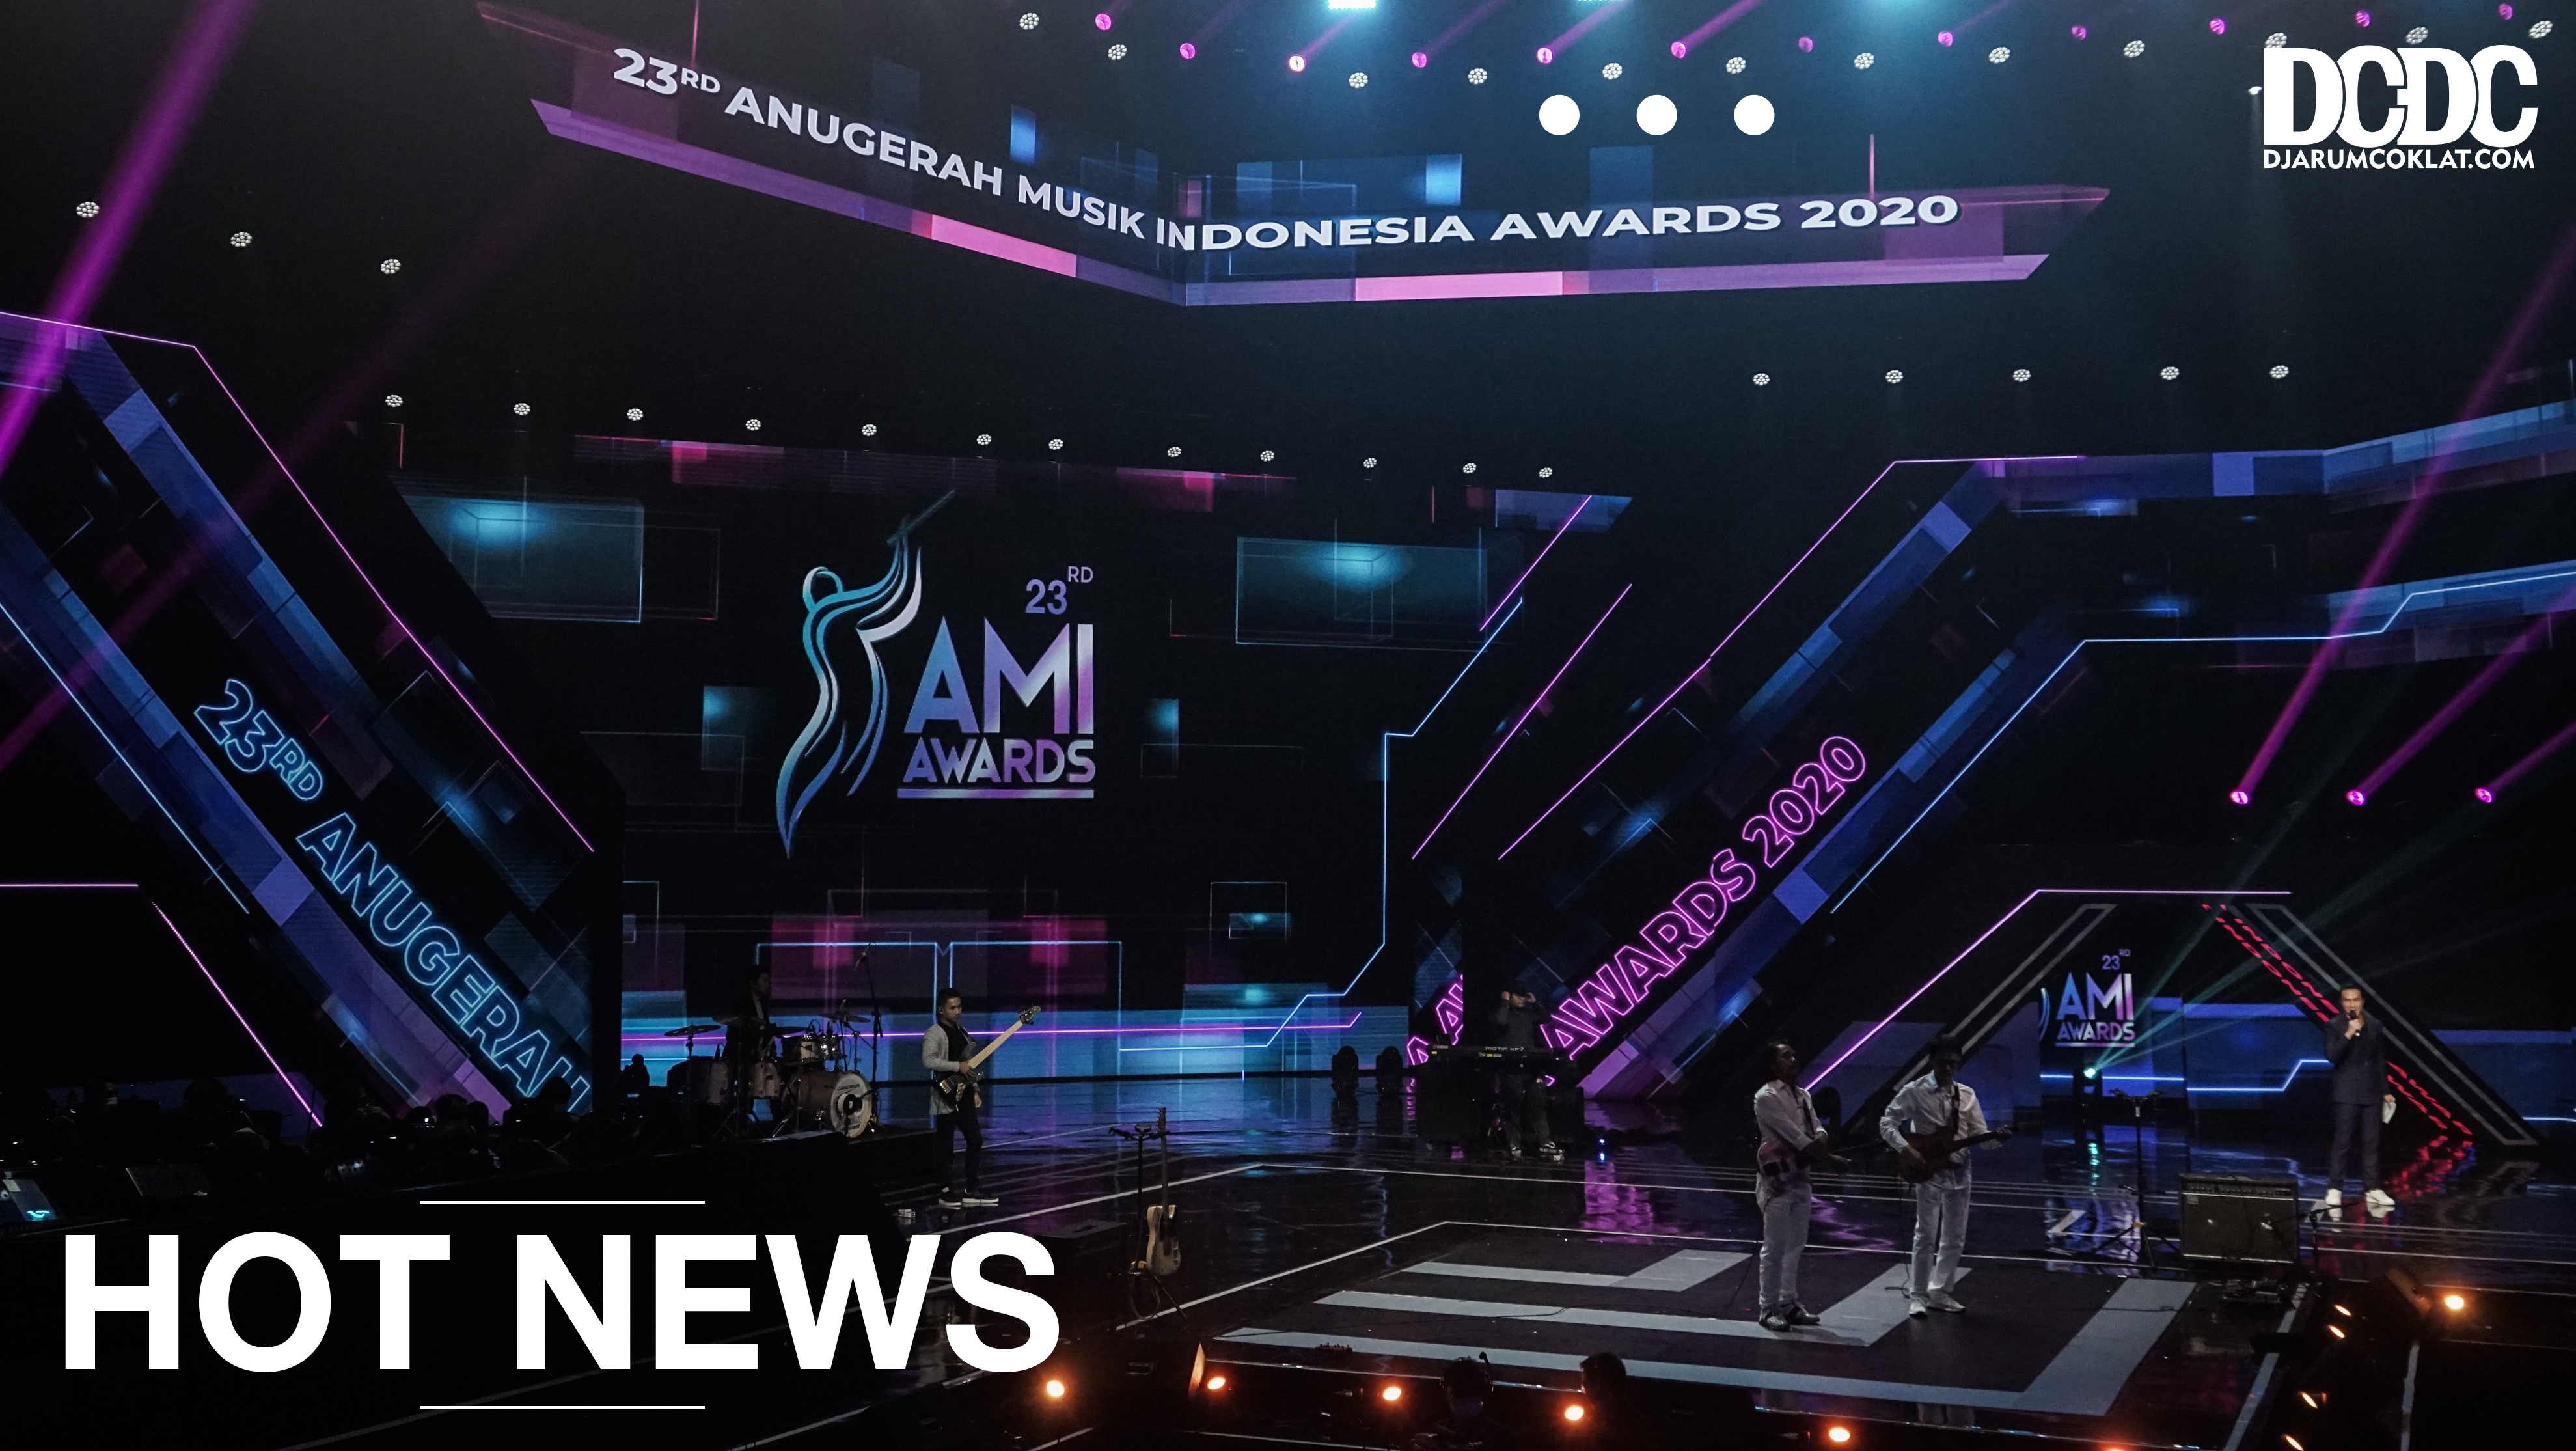 Sebanyak 4645 Lagu Siap Masuk Sidang Kategorisasi AMI Awards ke 24